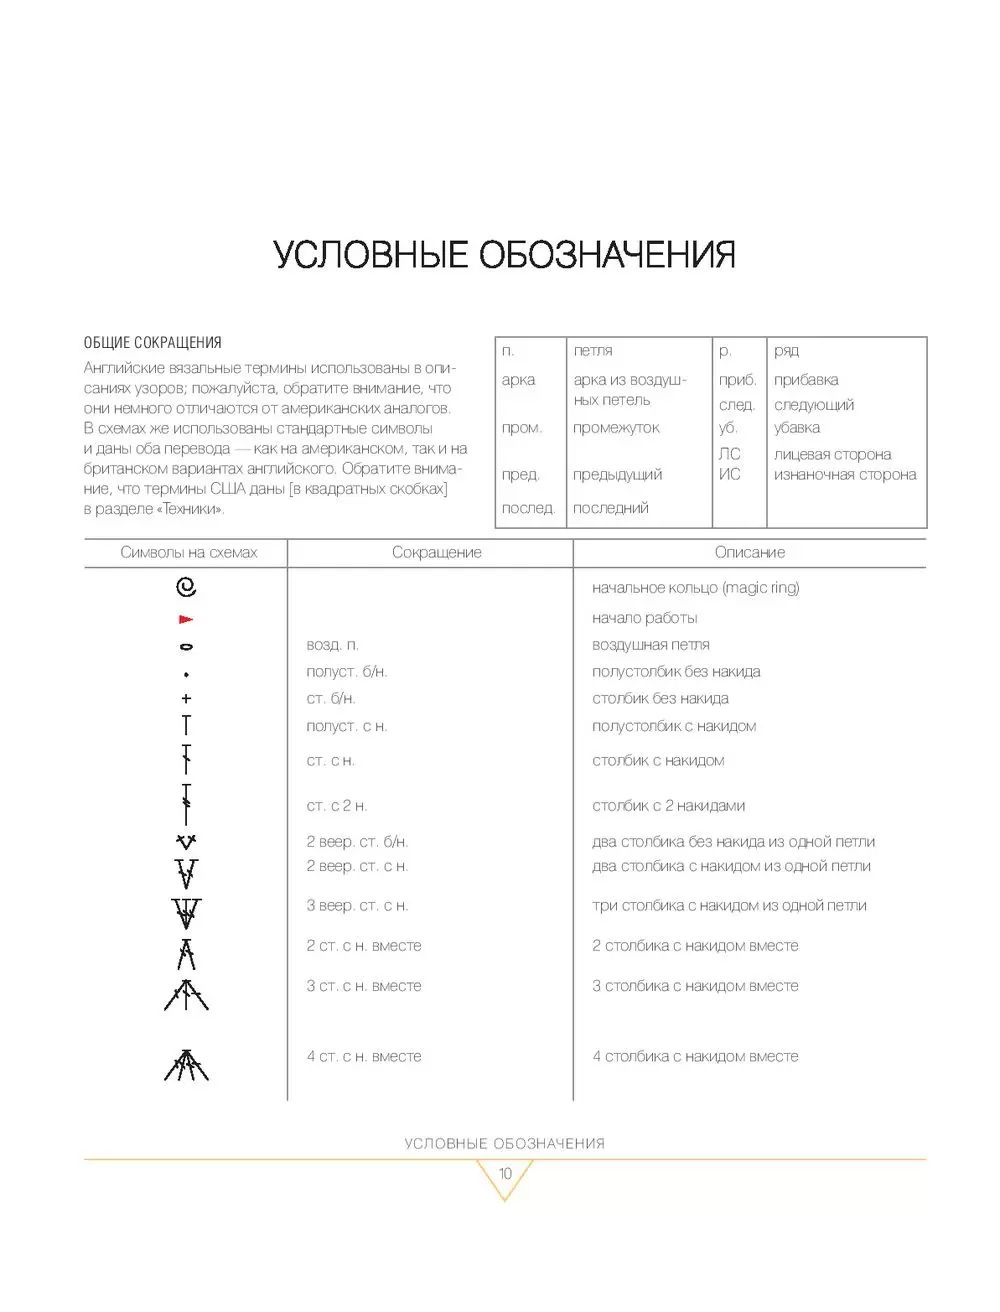 Перевод условных обозначений с разных языков на русский, аббревиатуры. | VK